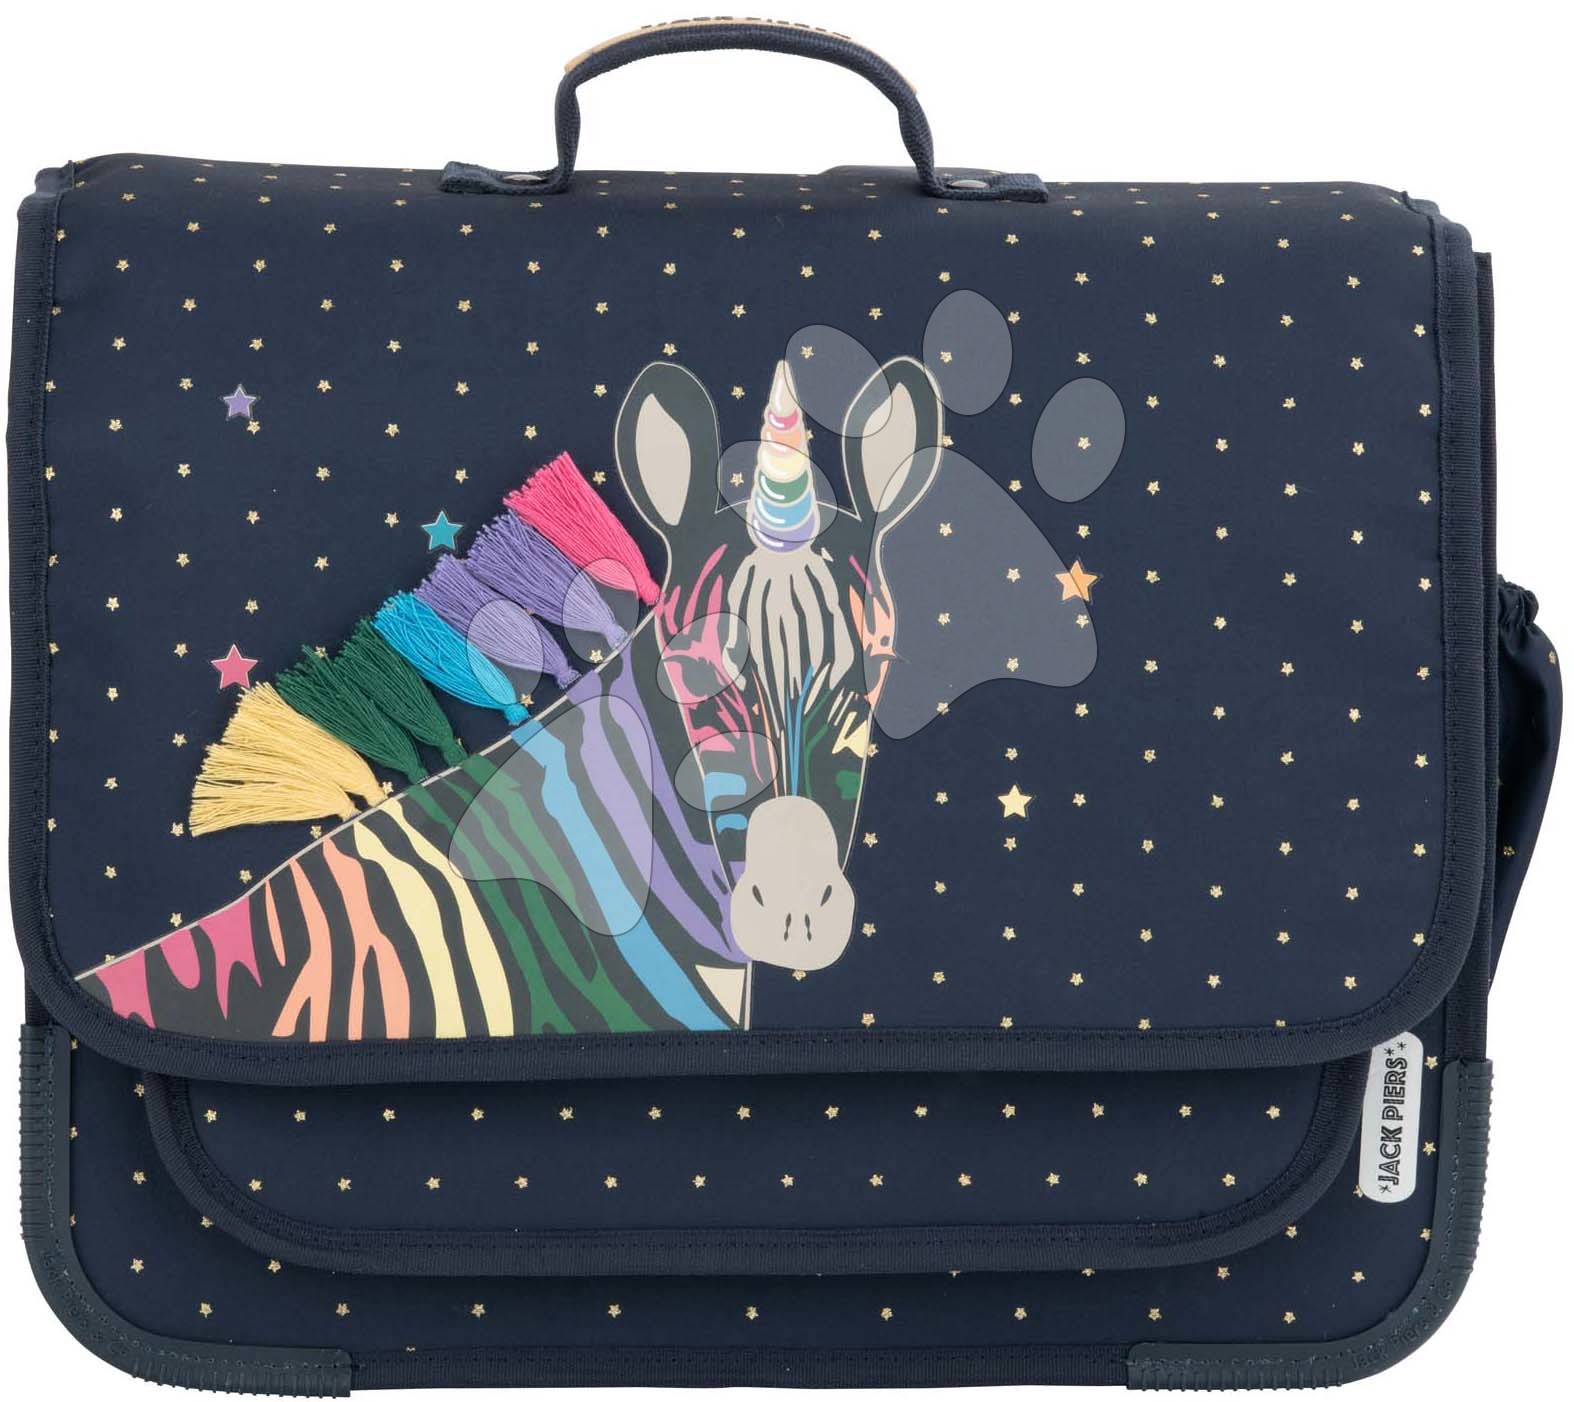 Školní aktovka Schoolbag Paris Large Zebra Jack Piers ergonomická luxusní provedení od 6 let 38*32*15 cm